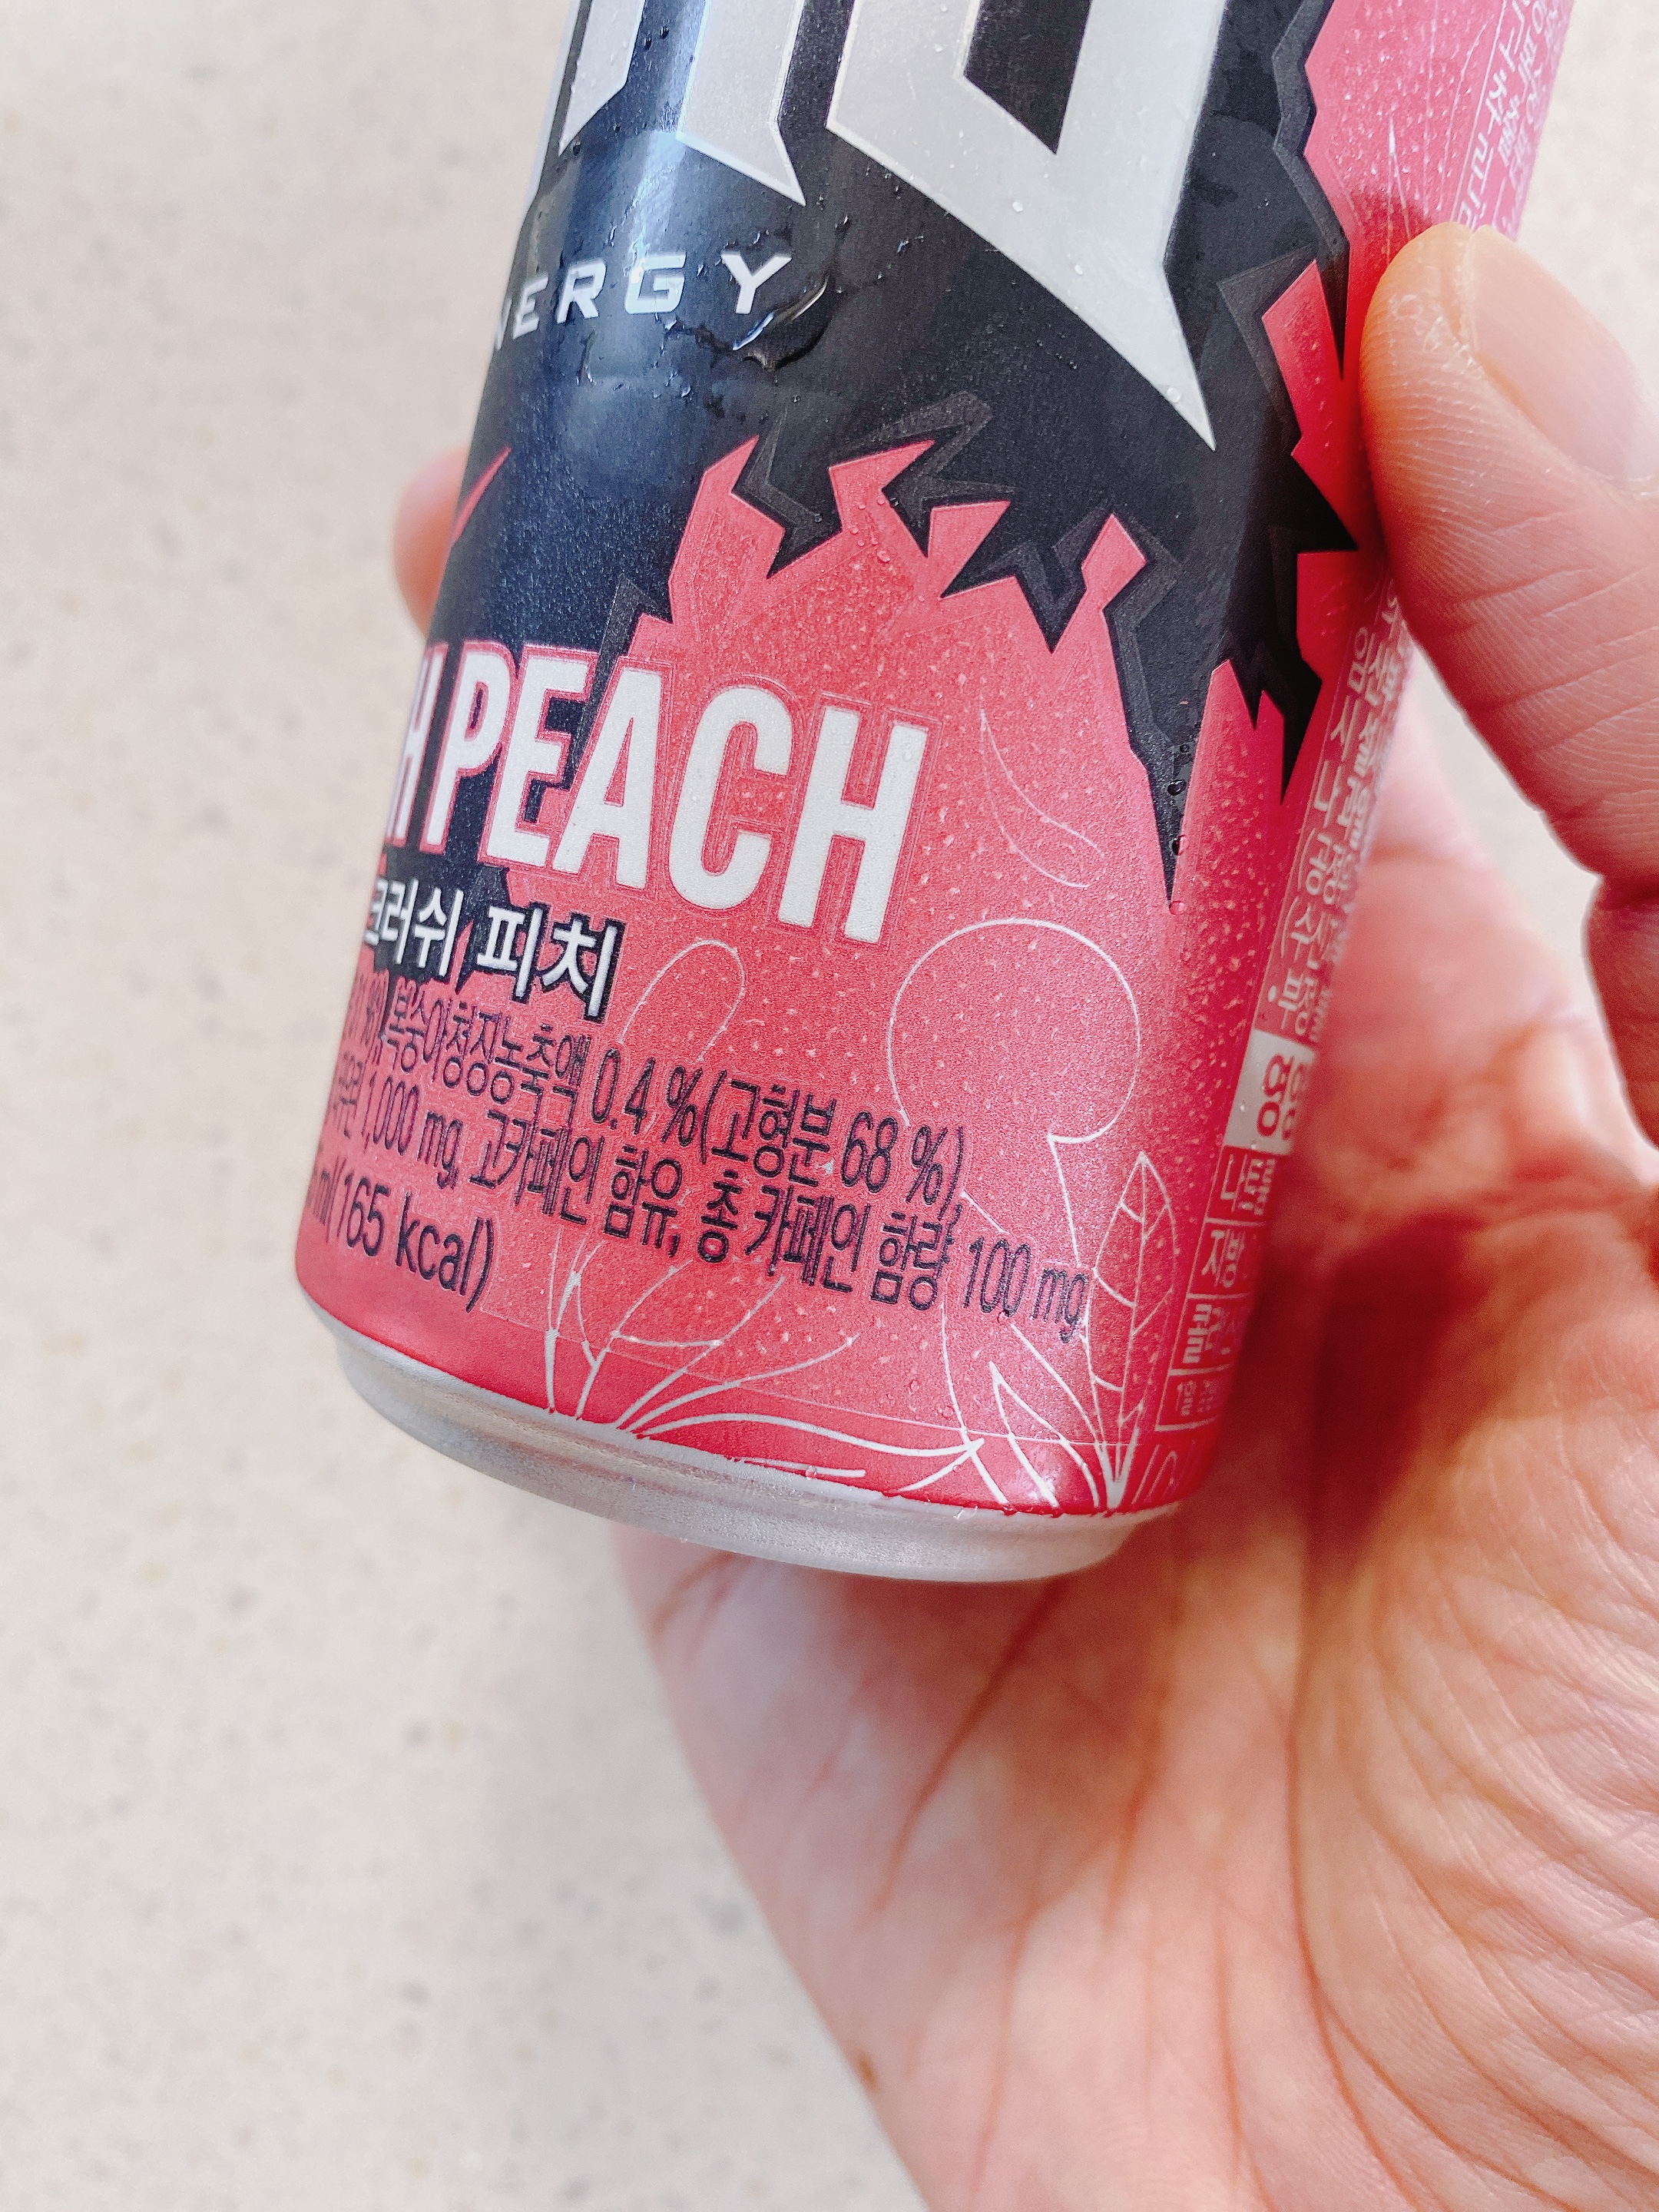 핫식스 더킹크러쉬 피치 제품&#44; 맛 소개